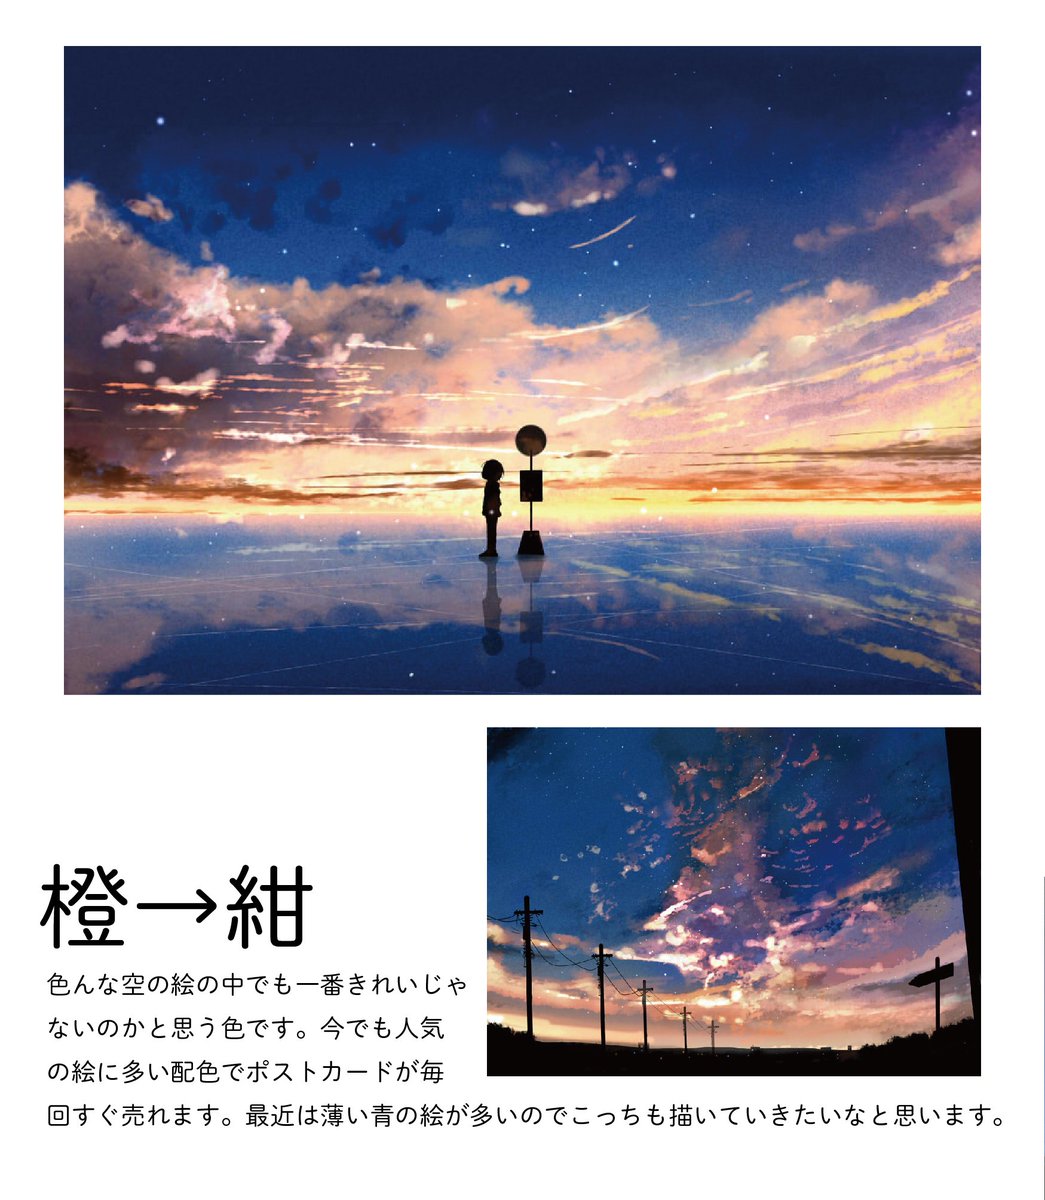 桜田千尋 10月1日レシピ本発売 自分の夕焼けのイラストを色ごとに分けてみました 夕焼けイラストは変化する空 のグラデーション作るのが楽しいです 好きな空の色 ありますか 今後のグッズなどの参考にします